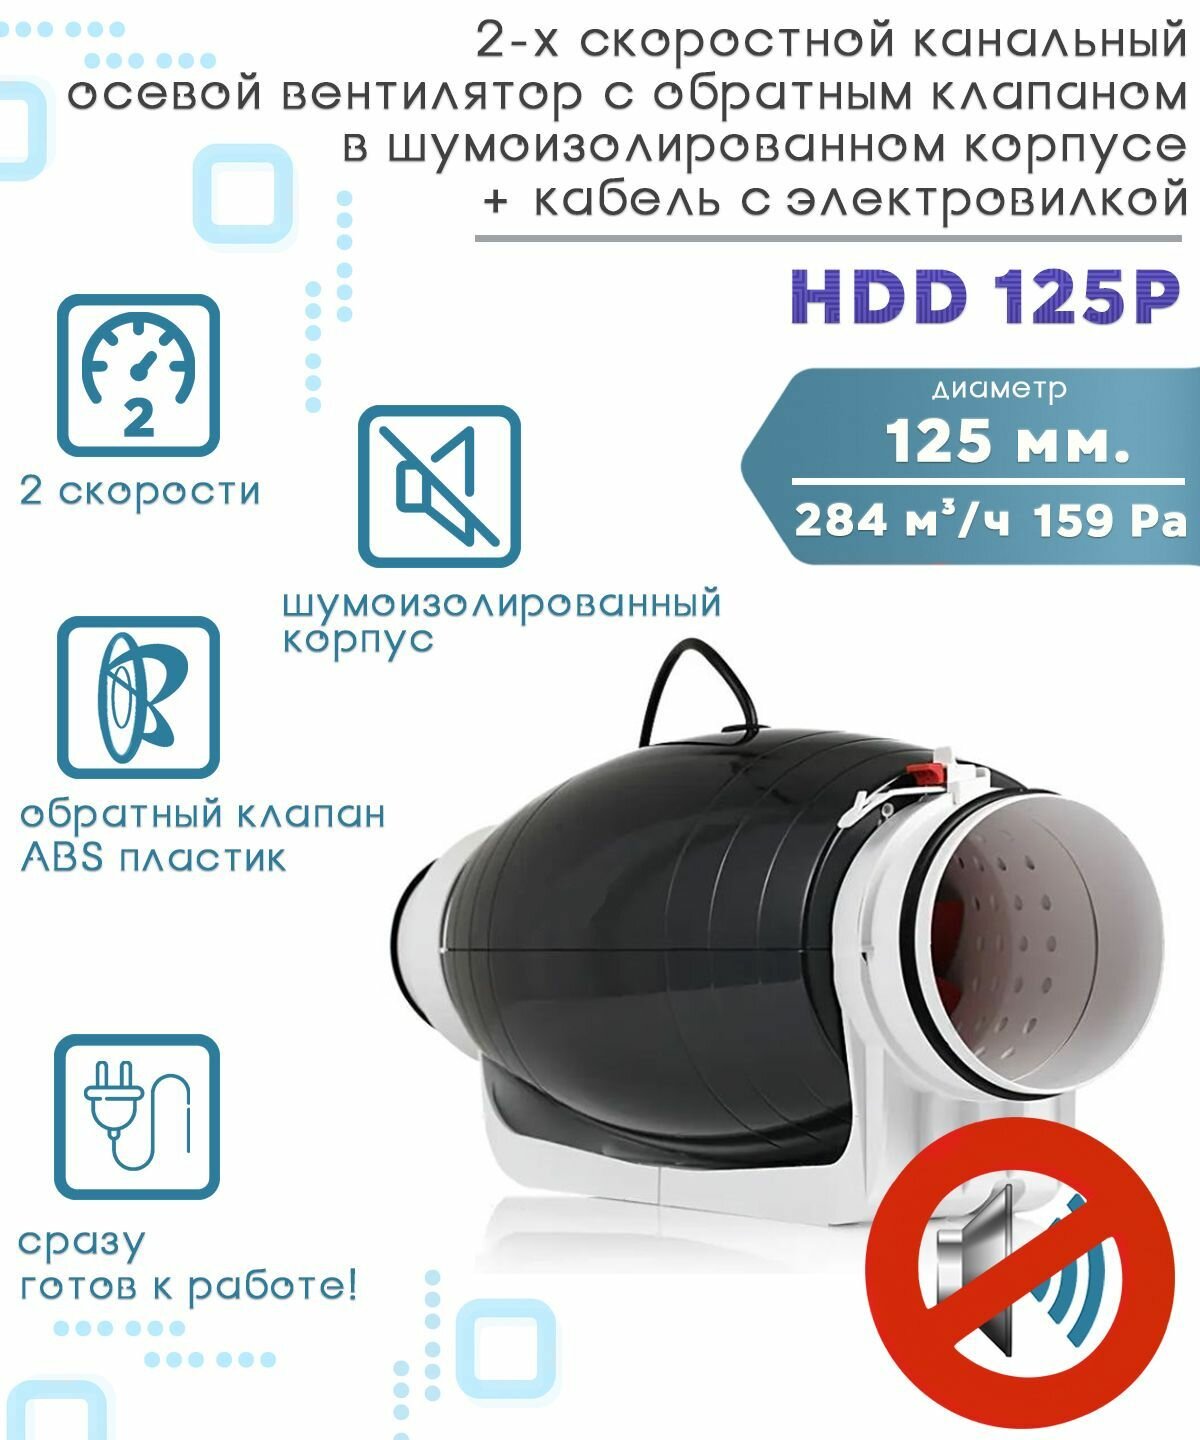 HDD 125P шумоизолированный двухскоростной канальный вентилятор с обратным клапаном D125 + кабель с электровилкой